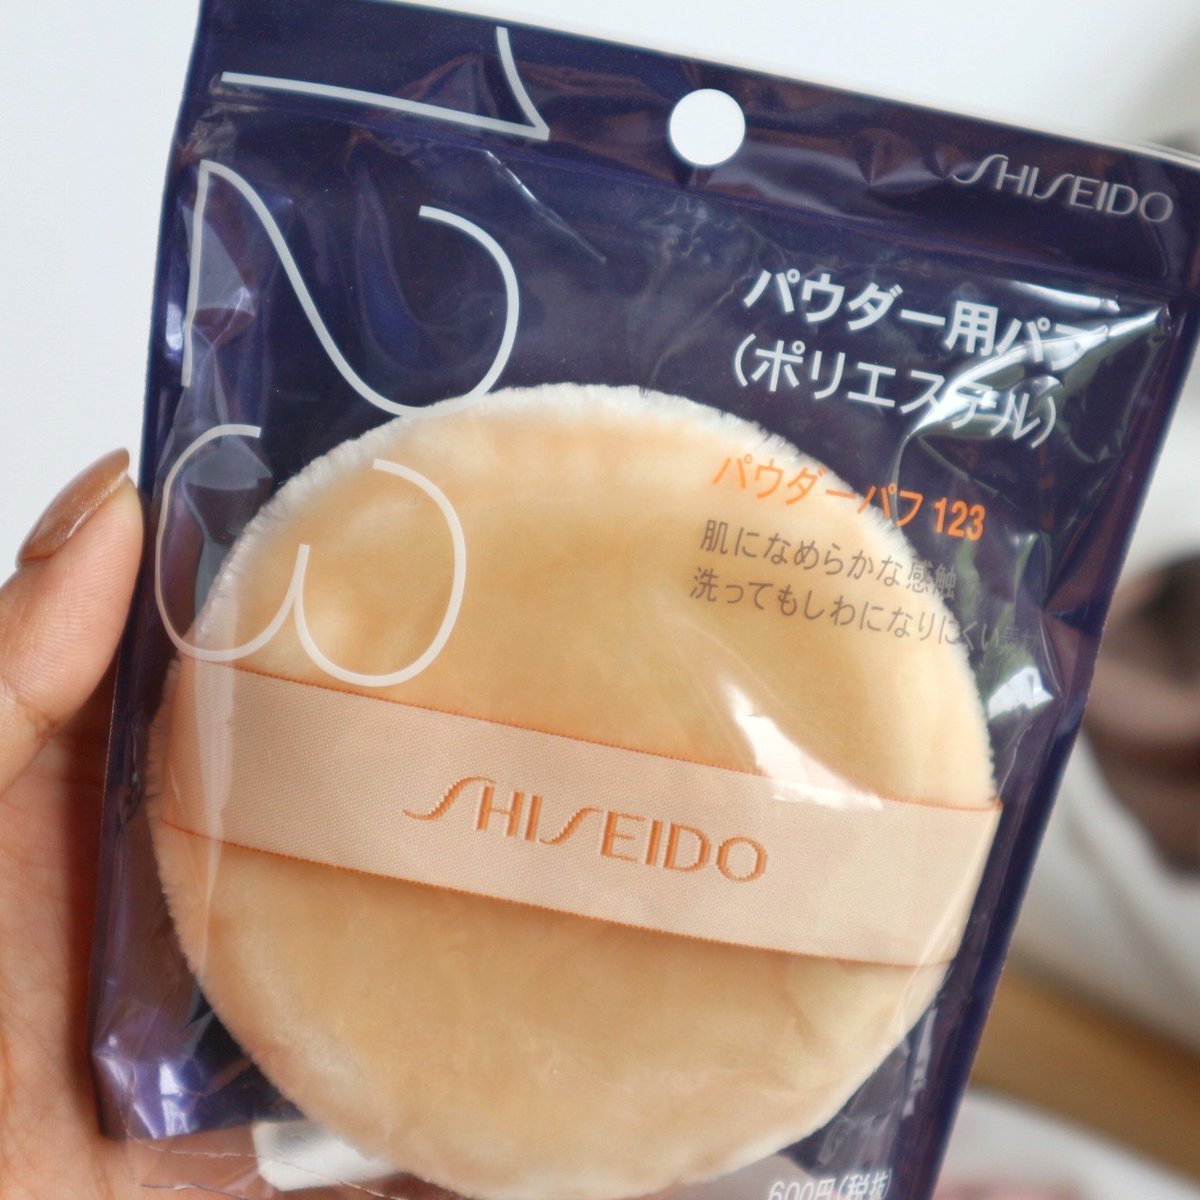 Shiseido Powder Puff No.123